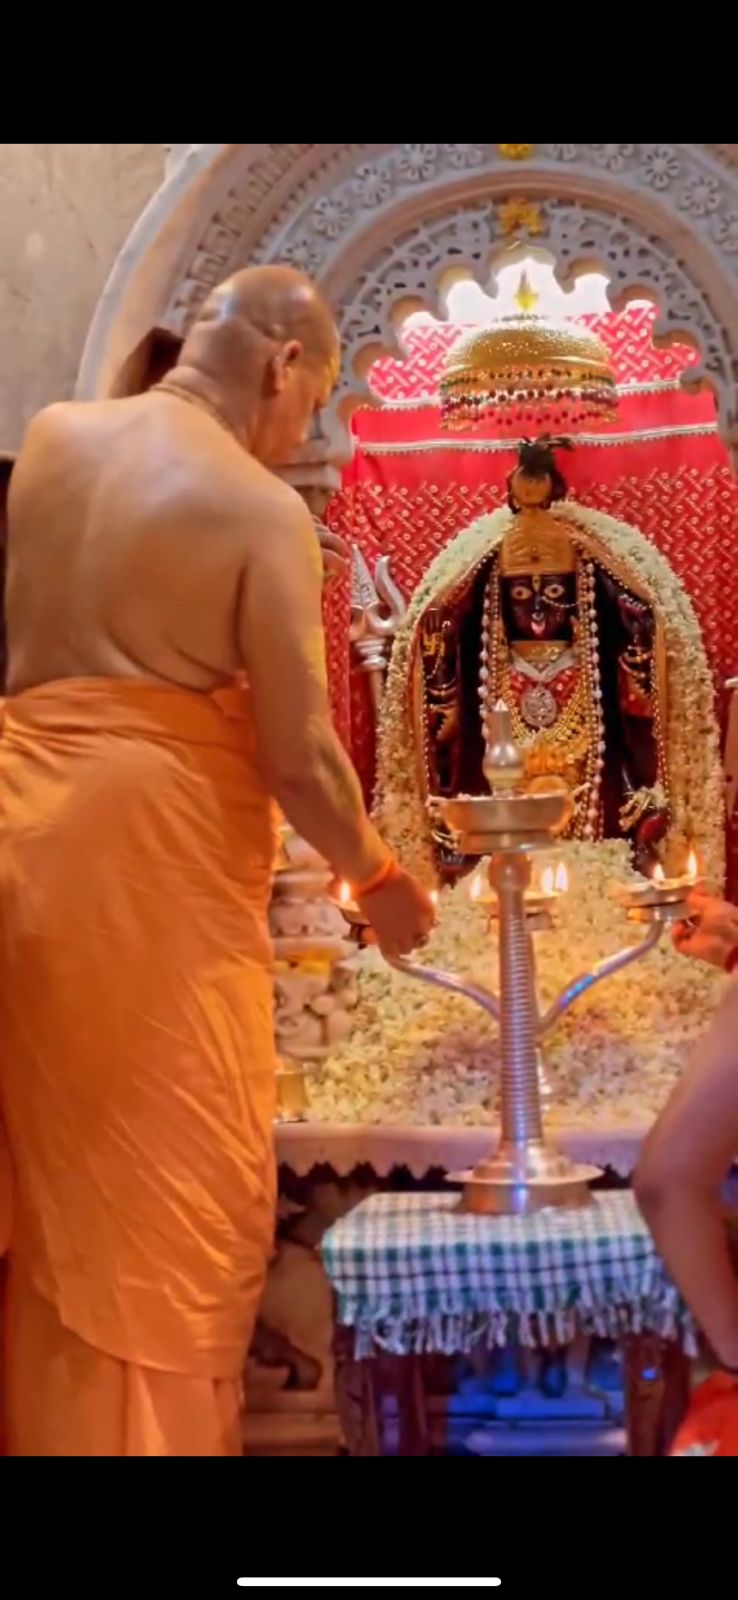 मां दुर्गा की आराधना कभी निष्फल नहीं जाती : स्वामी कैलाशानंद गिरी